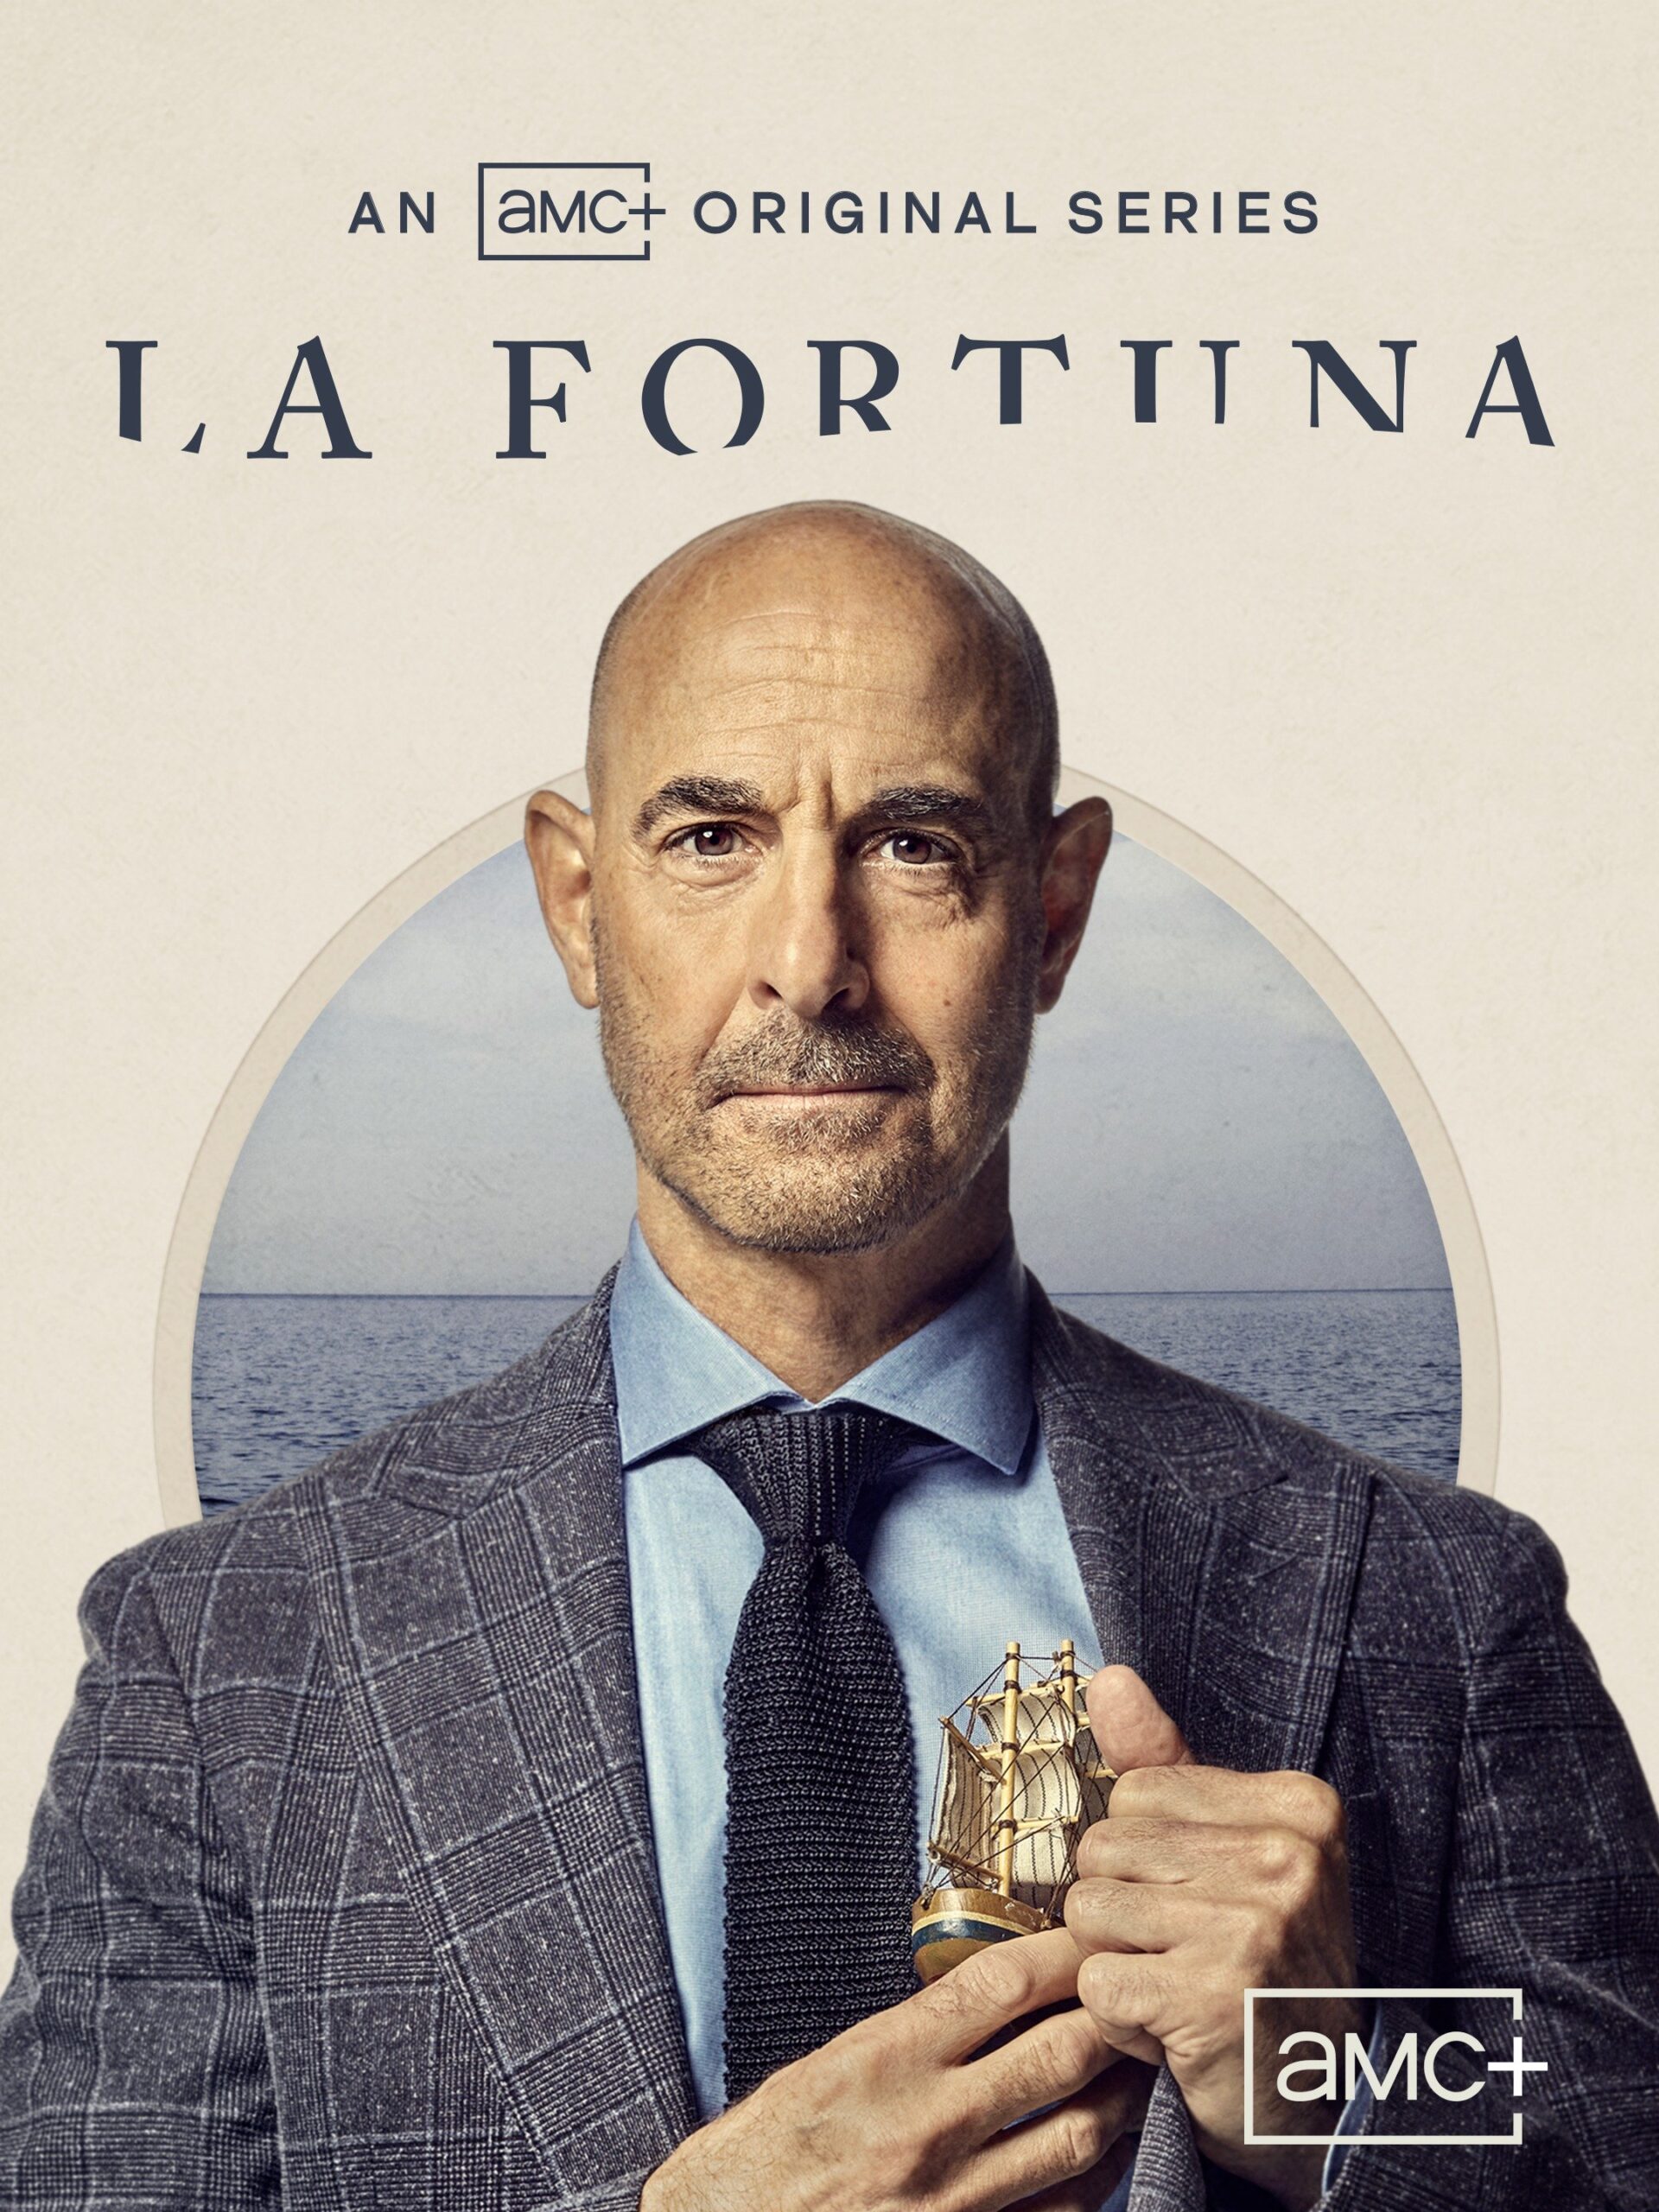 Is “La Fortuna Season 1” on AMC+